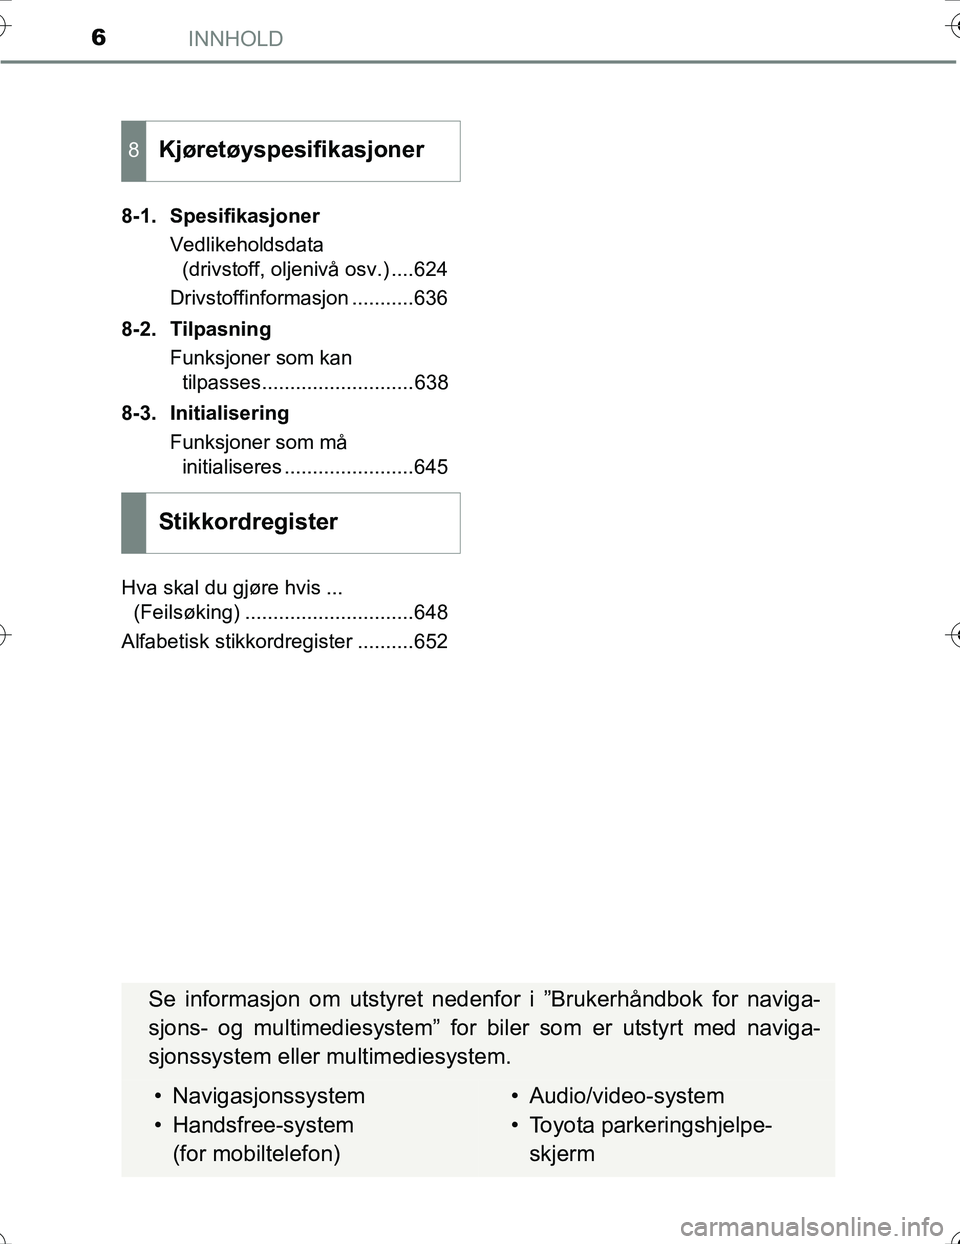 TOYOTA PRIUS 2015  Instruksjoner for bruk (in Norwegian) INNHOLD6
OM47A31NO8-1. Spesifikasjoner
Vedlikeholdsdata(drivstoff, oljenivå osv.) ....624
Drivstoffinformasjon ...........636
8-2. Tilpasning Funksjoner som kantilpasses...........................638